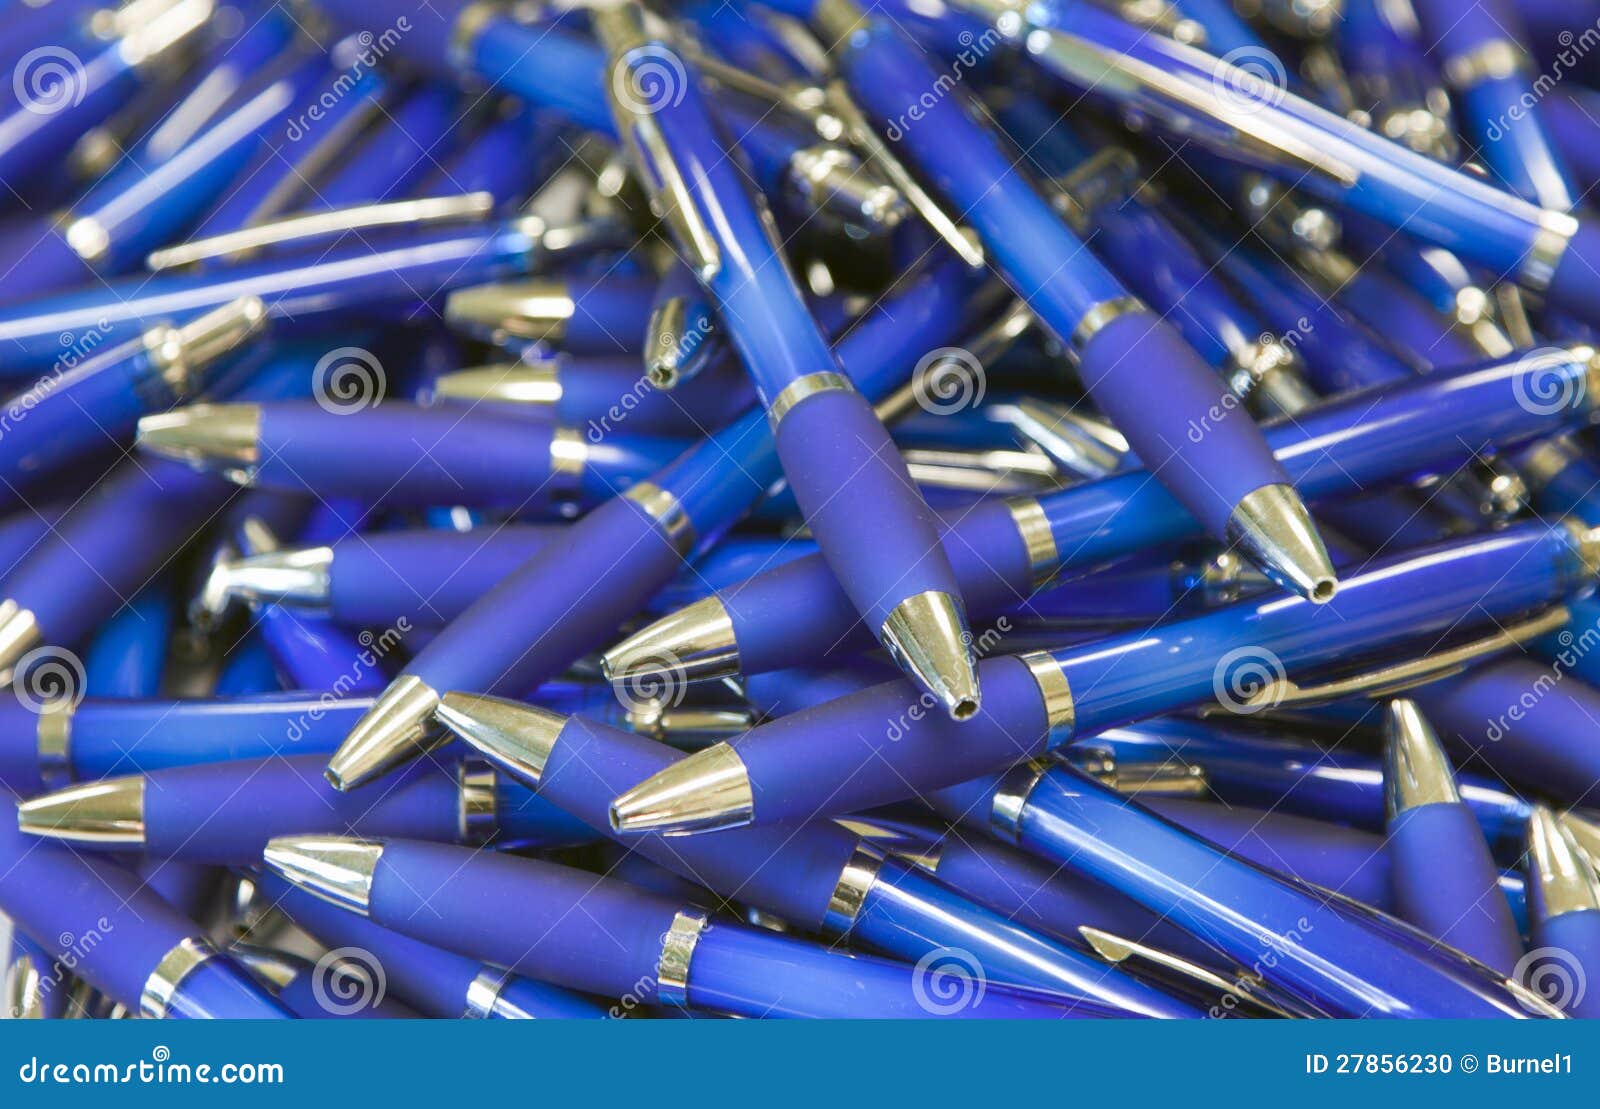 pile of ballpoint pens